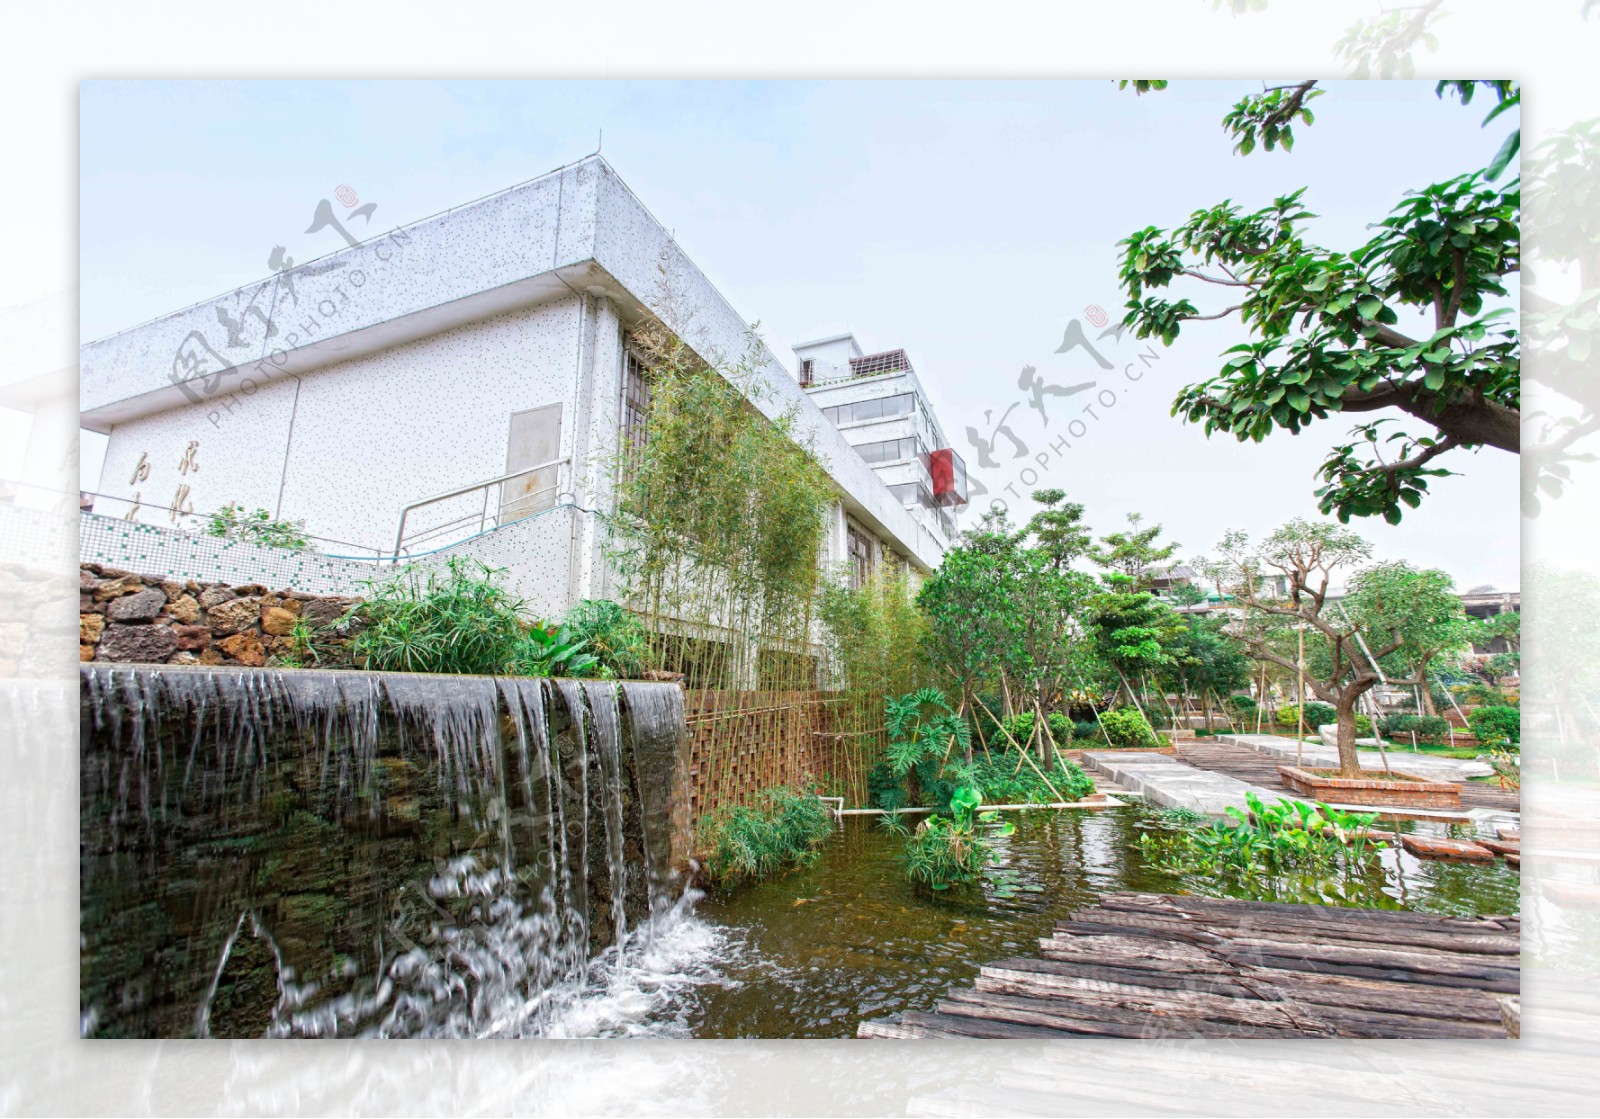 广州番禺淘商城电子商务创意产业园园区景色图片